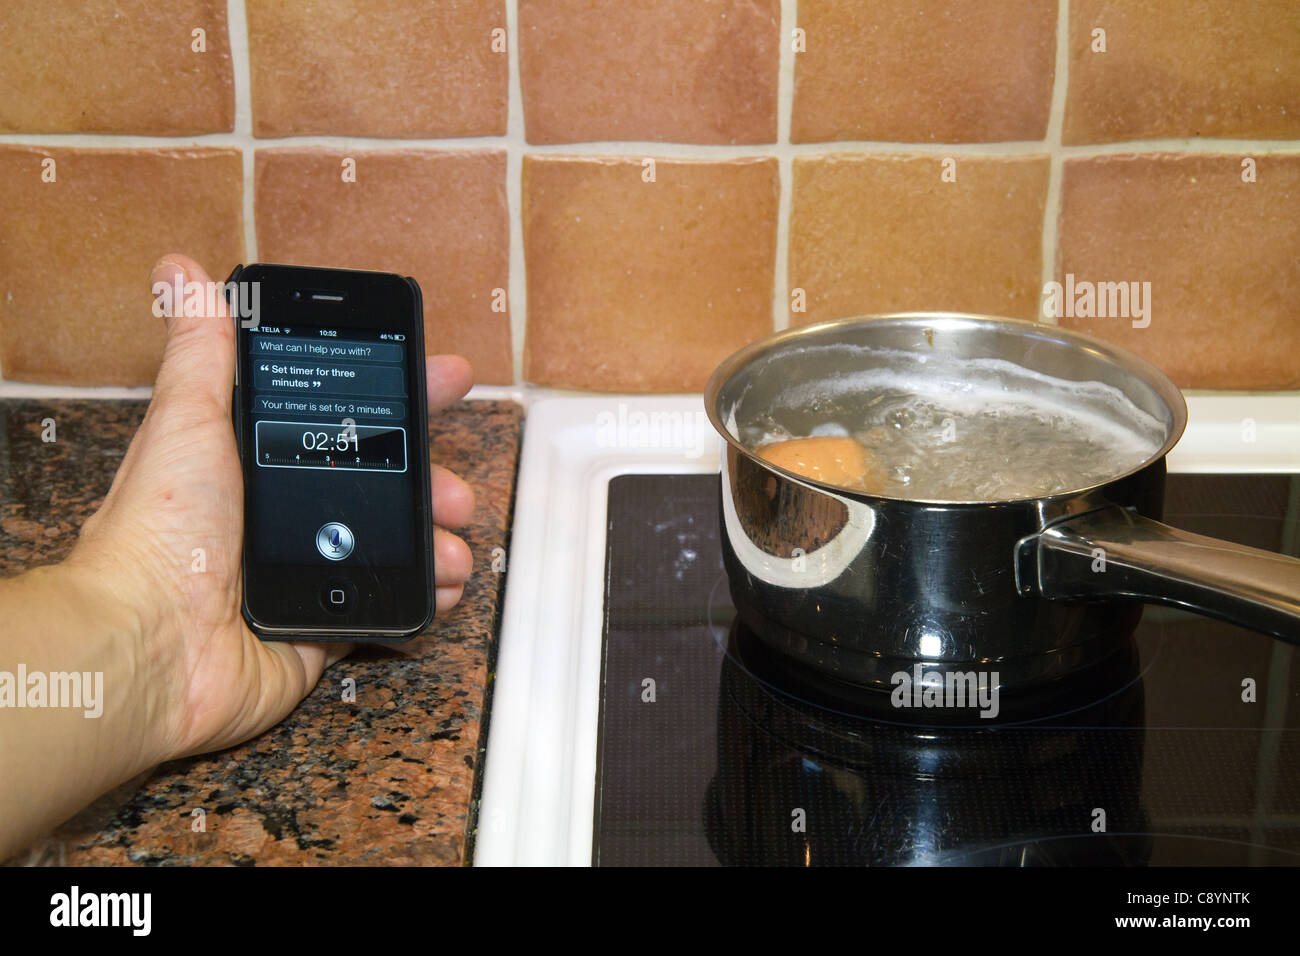 Siri Anwendung persönlicher Assistent auf ein iPhone 4 s mit Sprachsteuerung Timer für drei Minuten während des Kochens Eiern festlegen Stockfoto